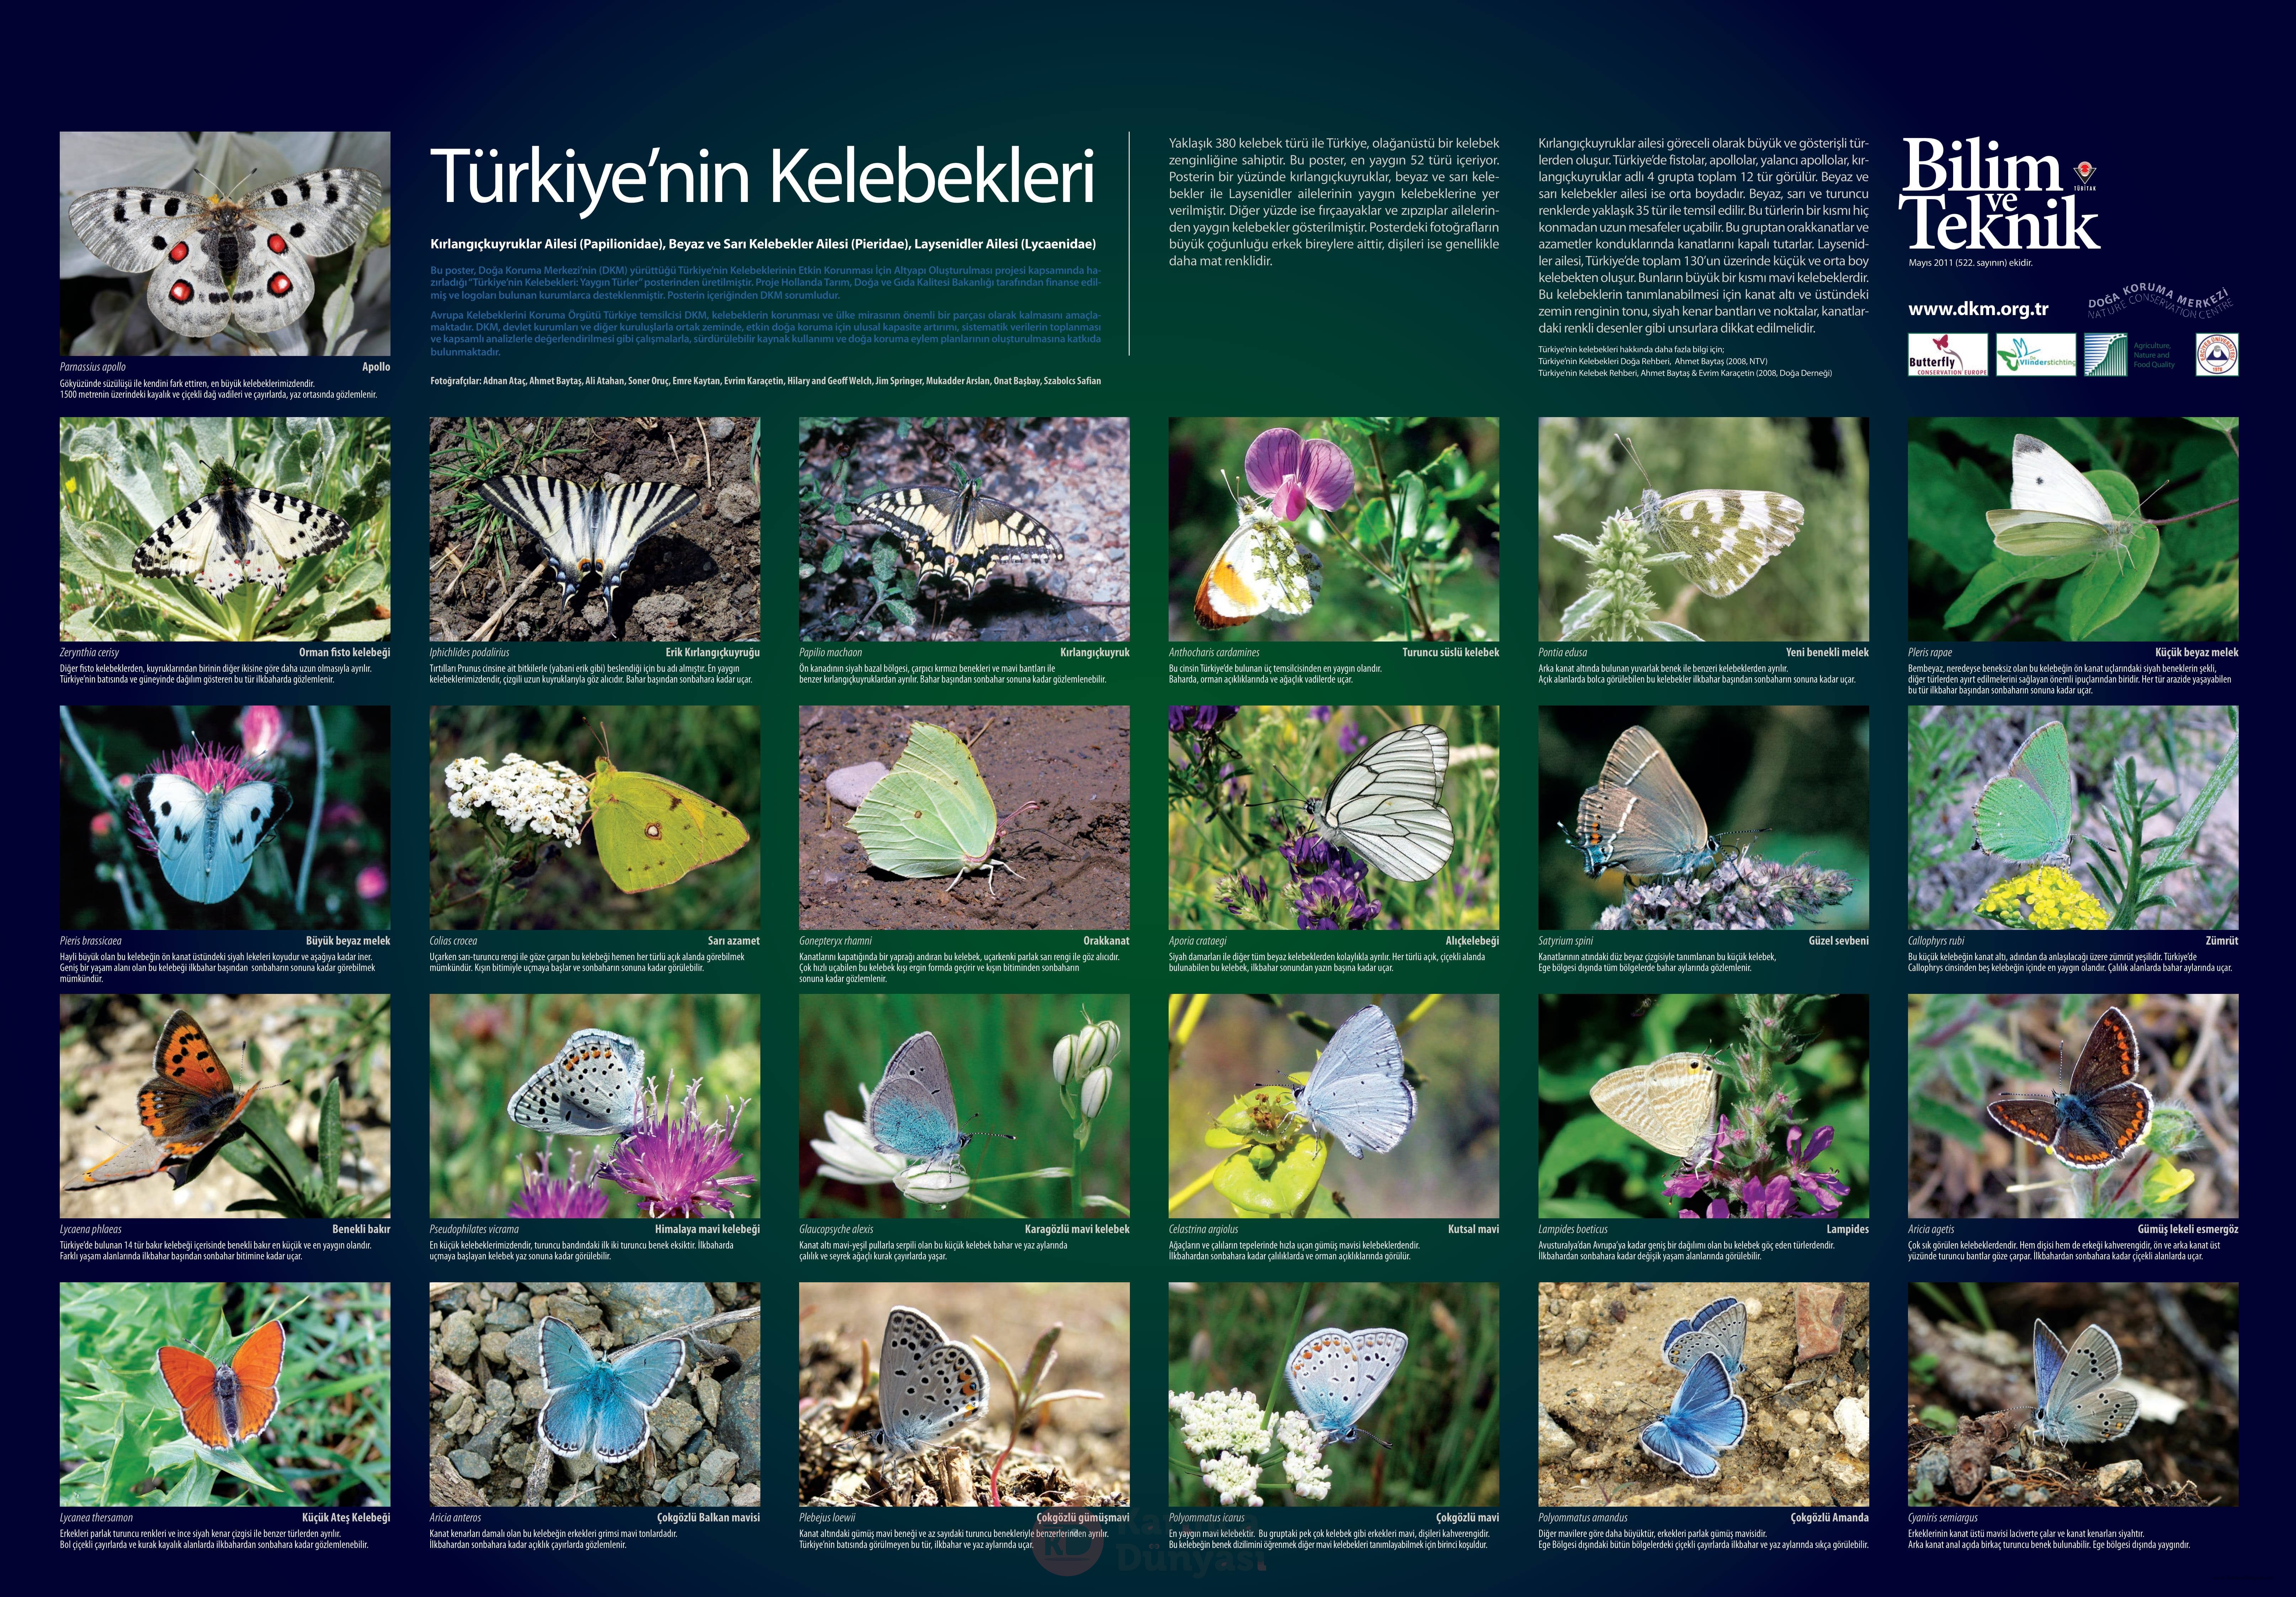 turkiyenin_kelebekleri-1.jpg